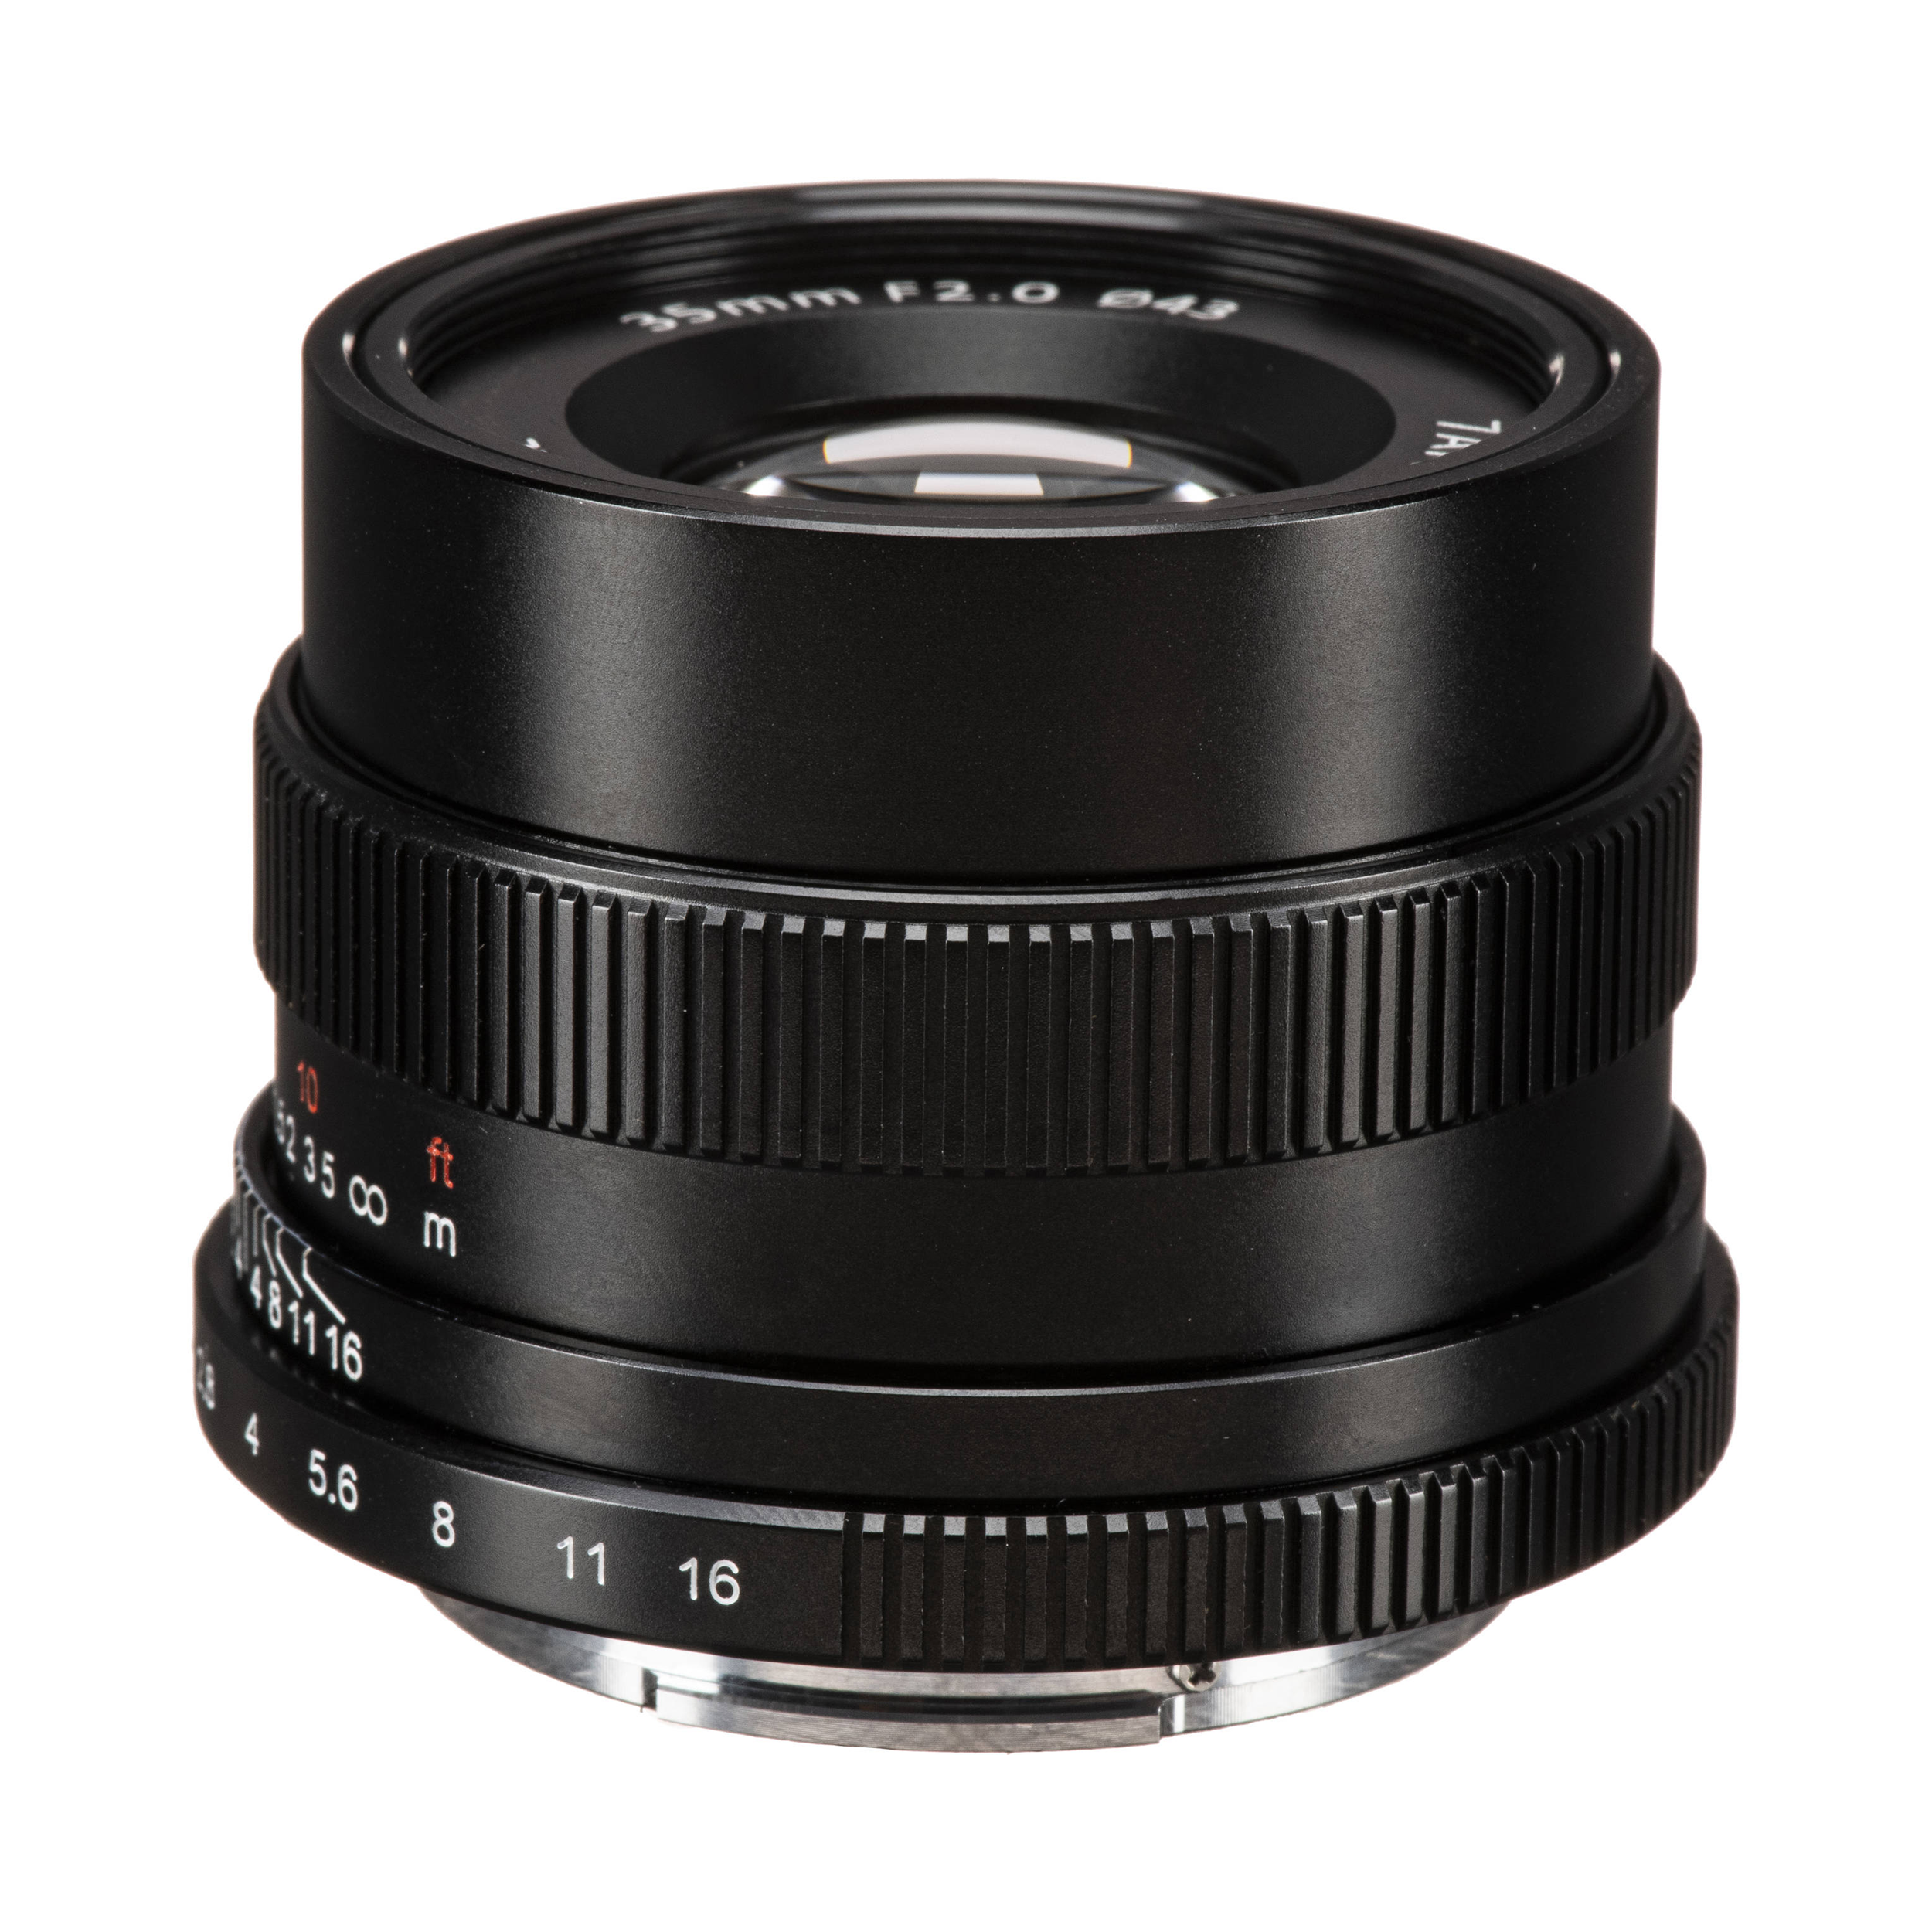 7artisans Photoelectric 35mm f/2 Lens for Sony E Mount